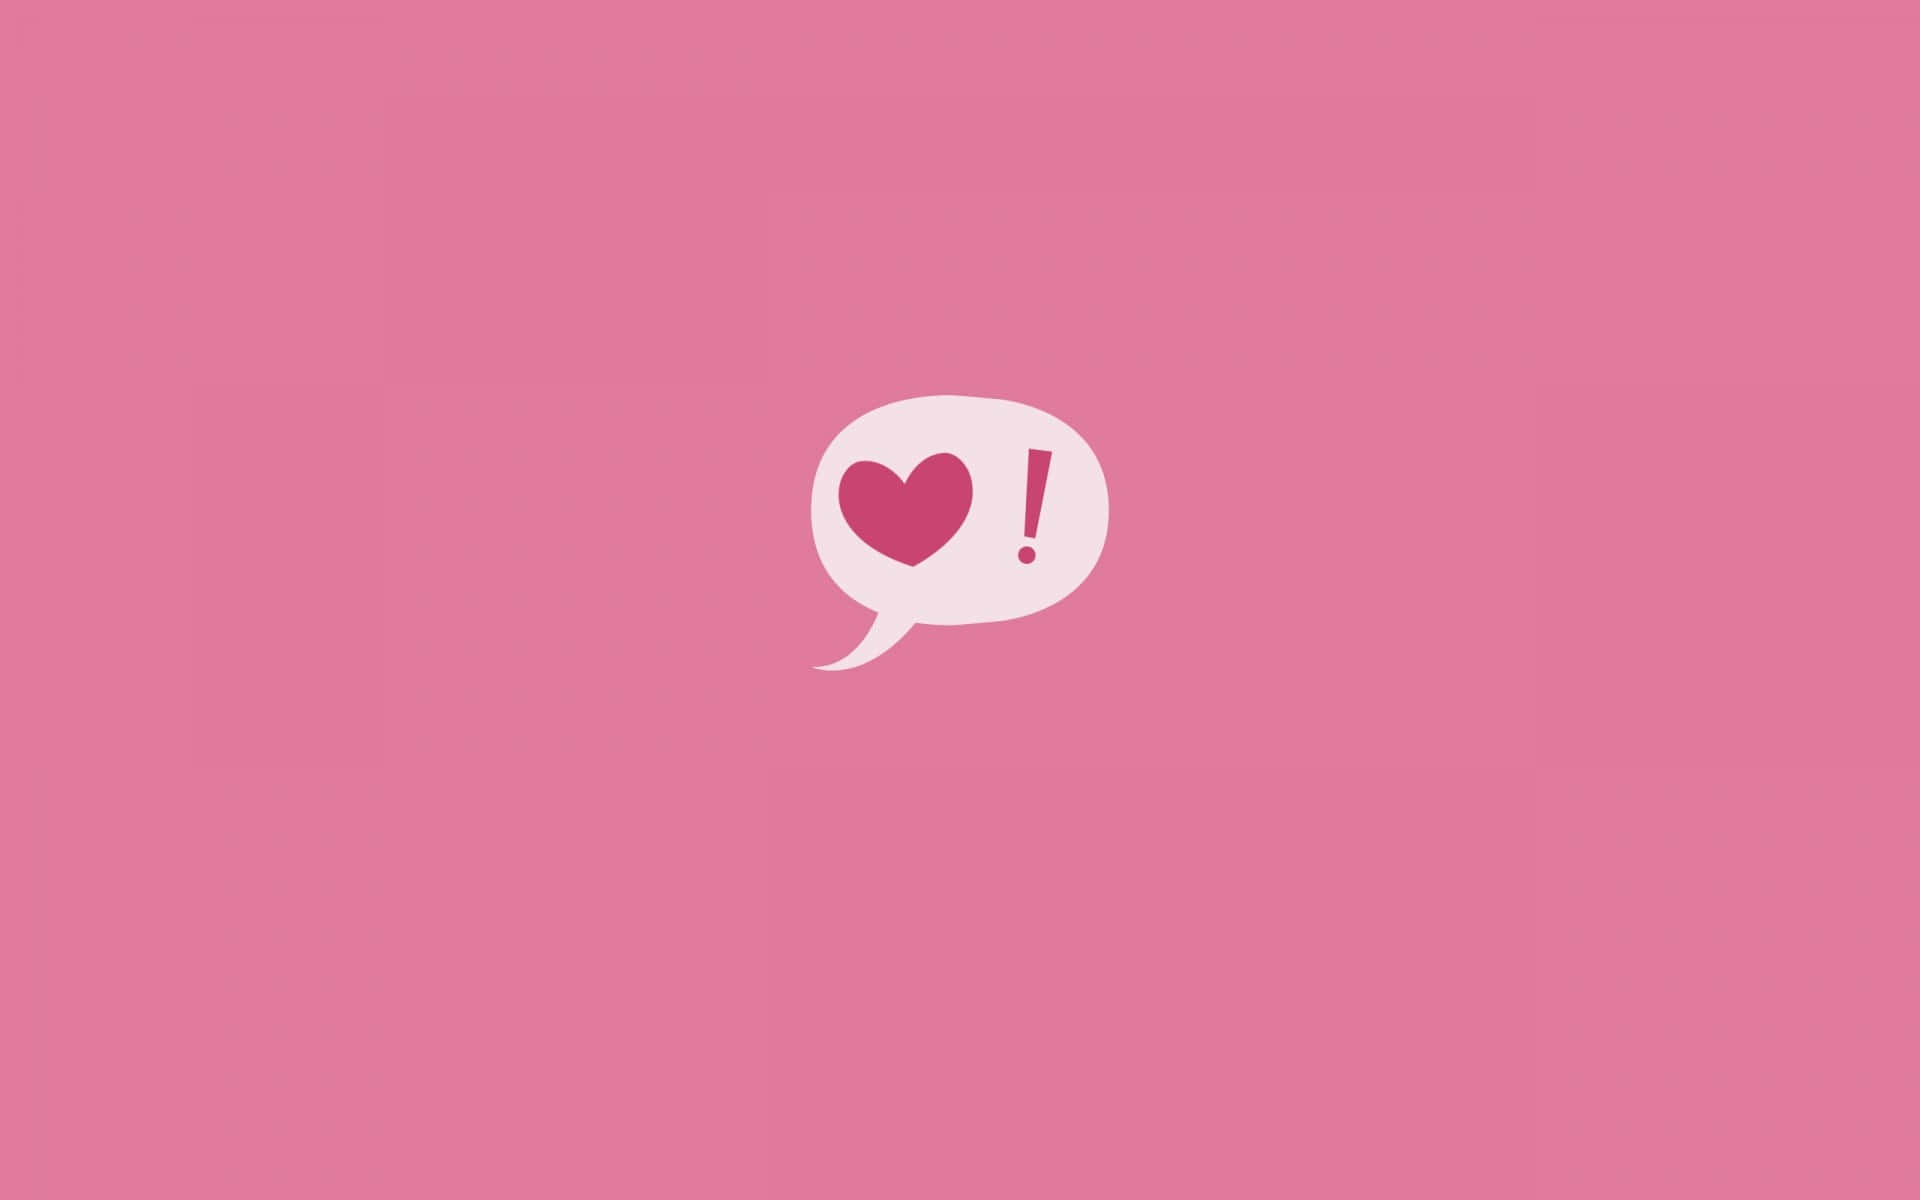 Nydhverdagene Med Denne Livlige Cute Neon Pink Baggrundsbillede Wallpaper